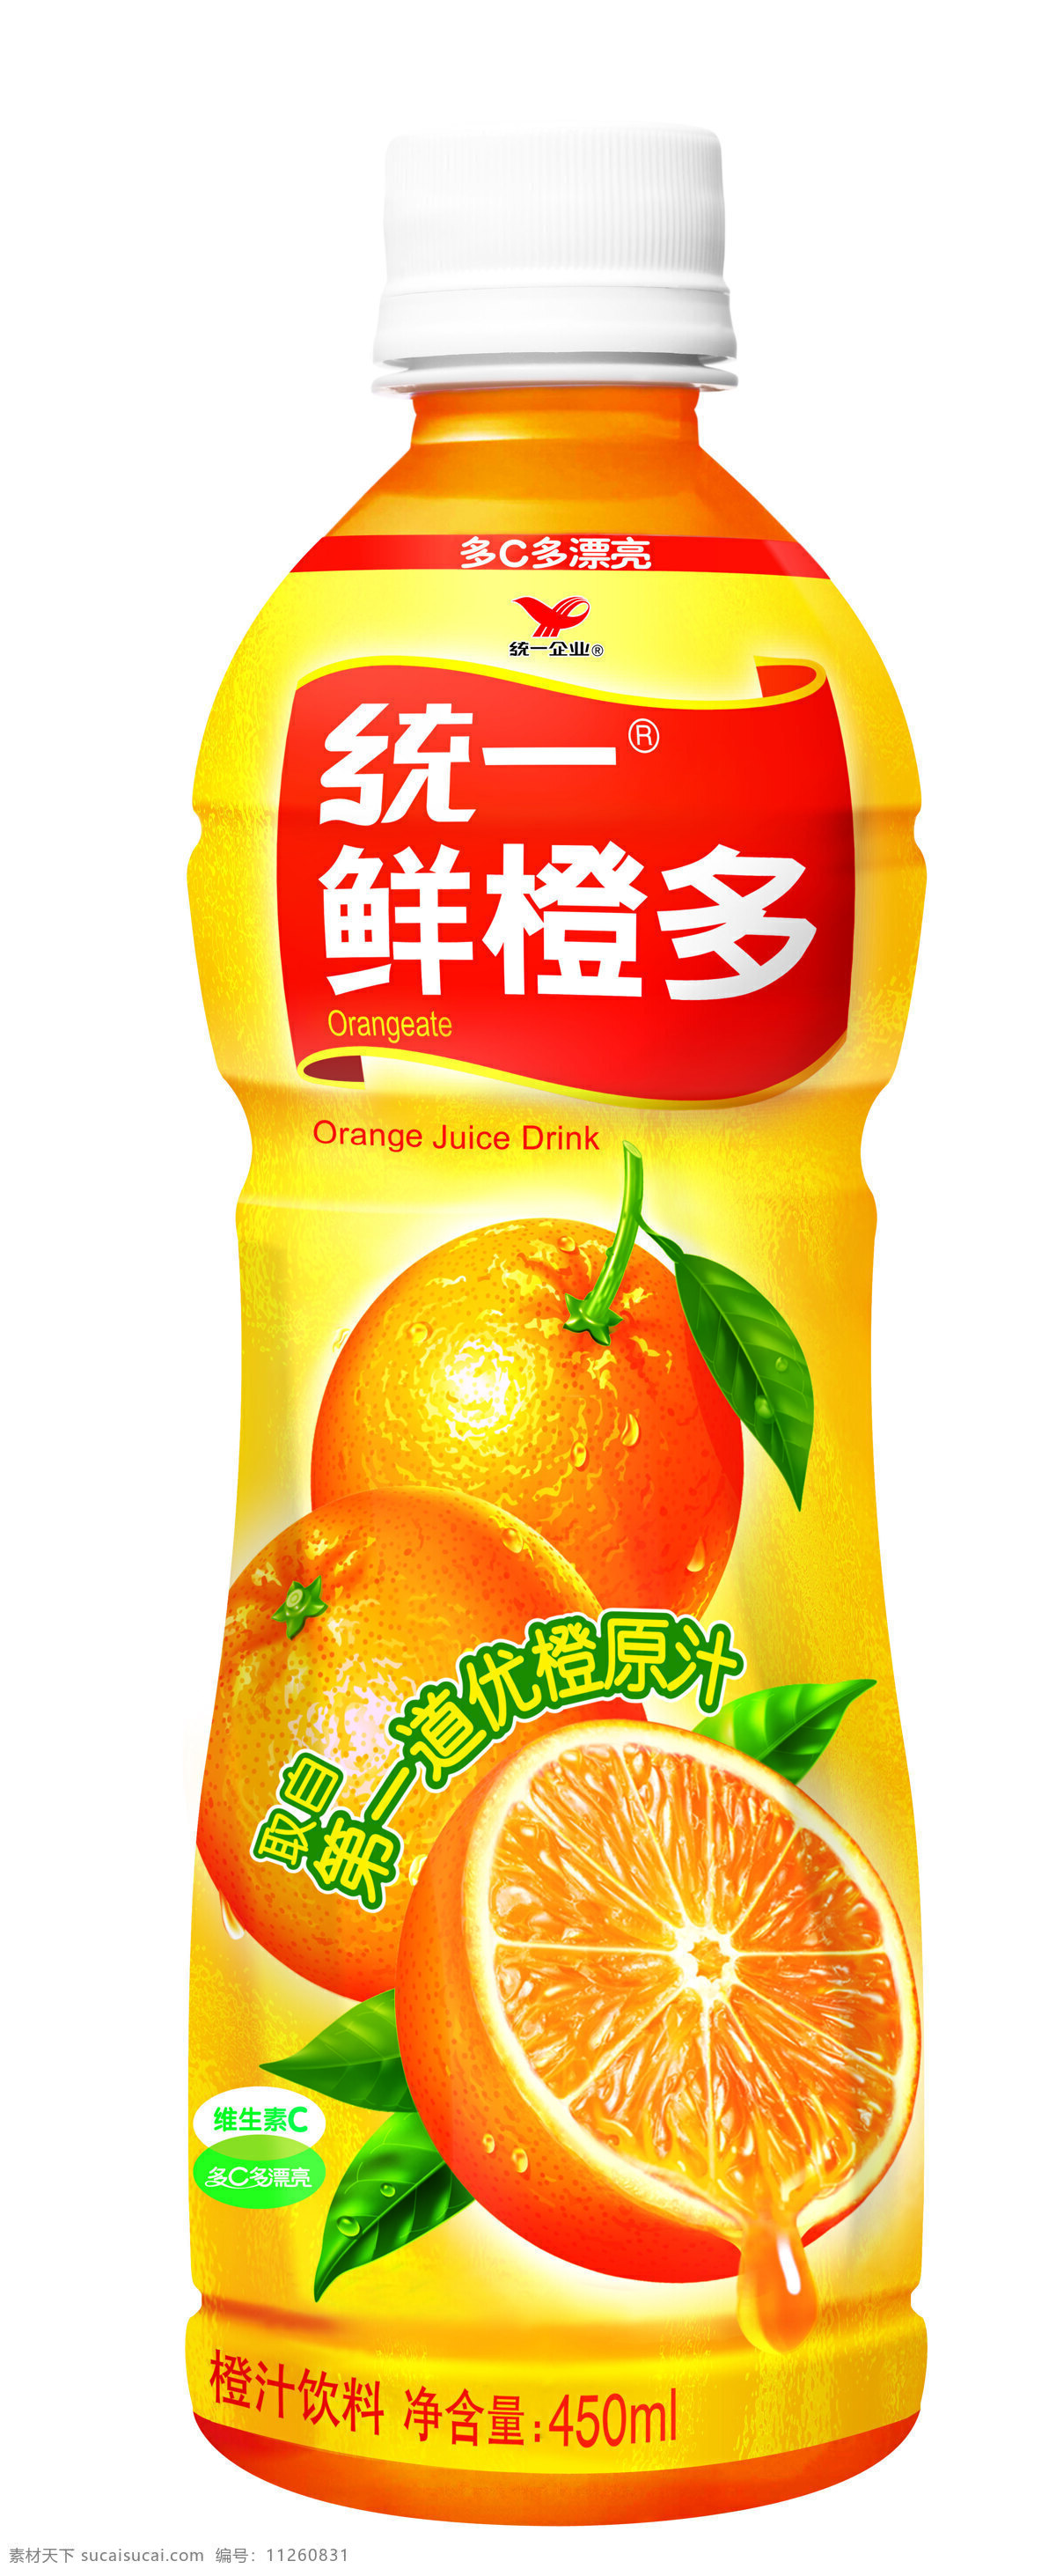 鲜橙多 ml 瓶子 鲜橙多瓶子 高清瓶子 经典产品照 超清晰 经典 果汁 设计图库